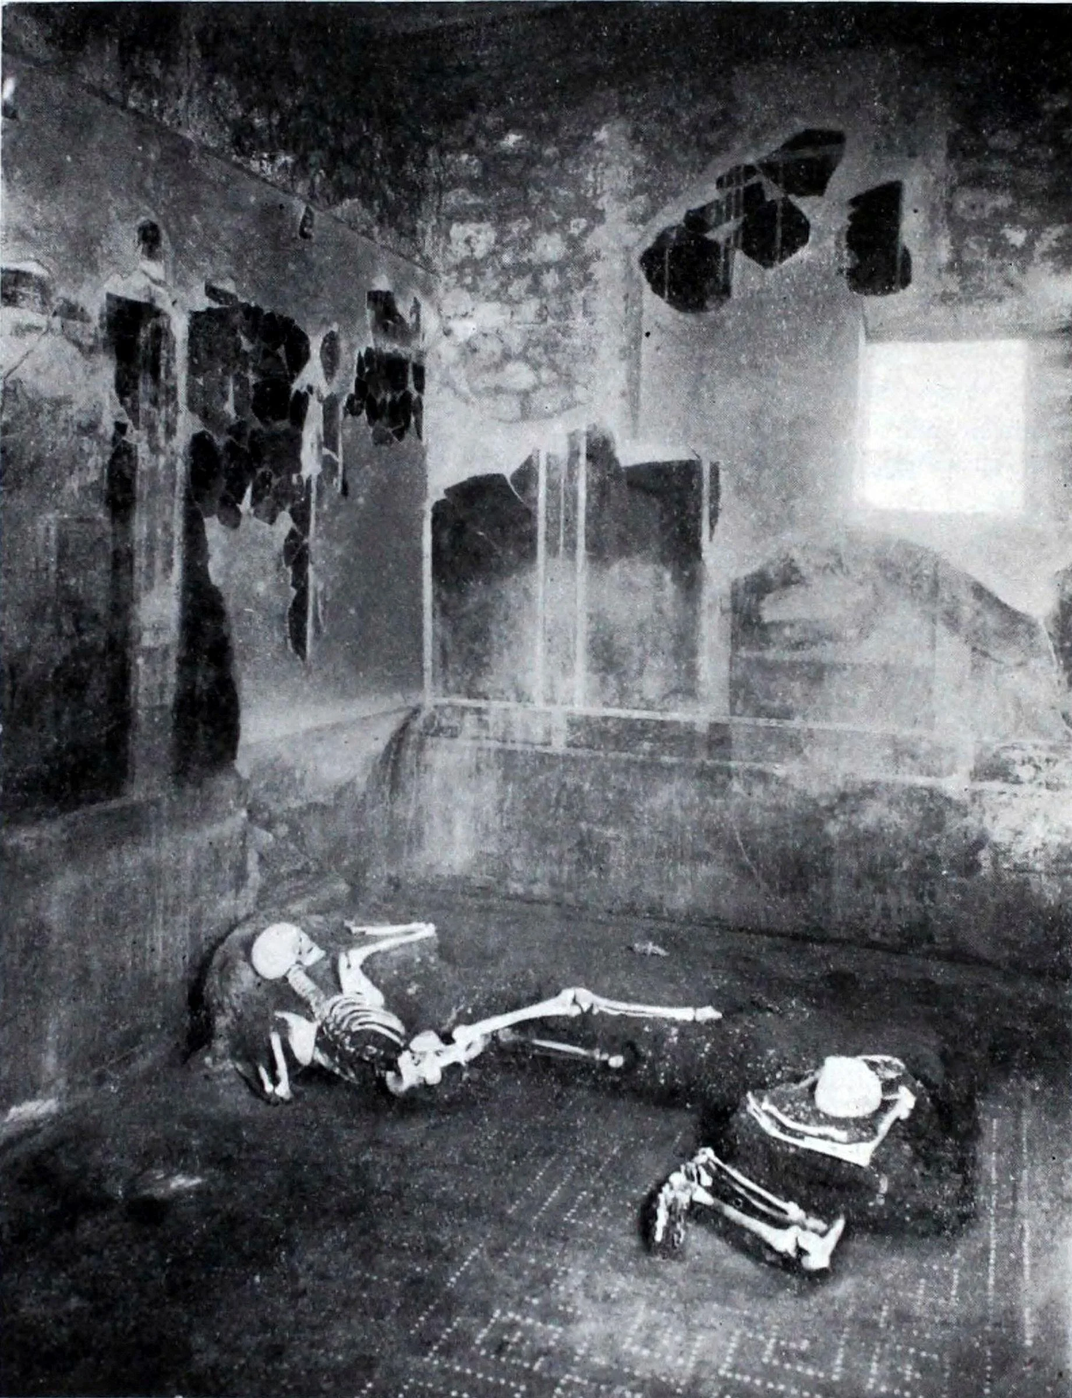 Dos esqueletos yacen en una casa en una imagen en blanco y negro